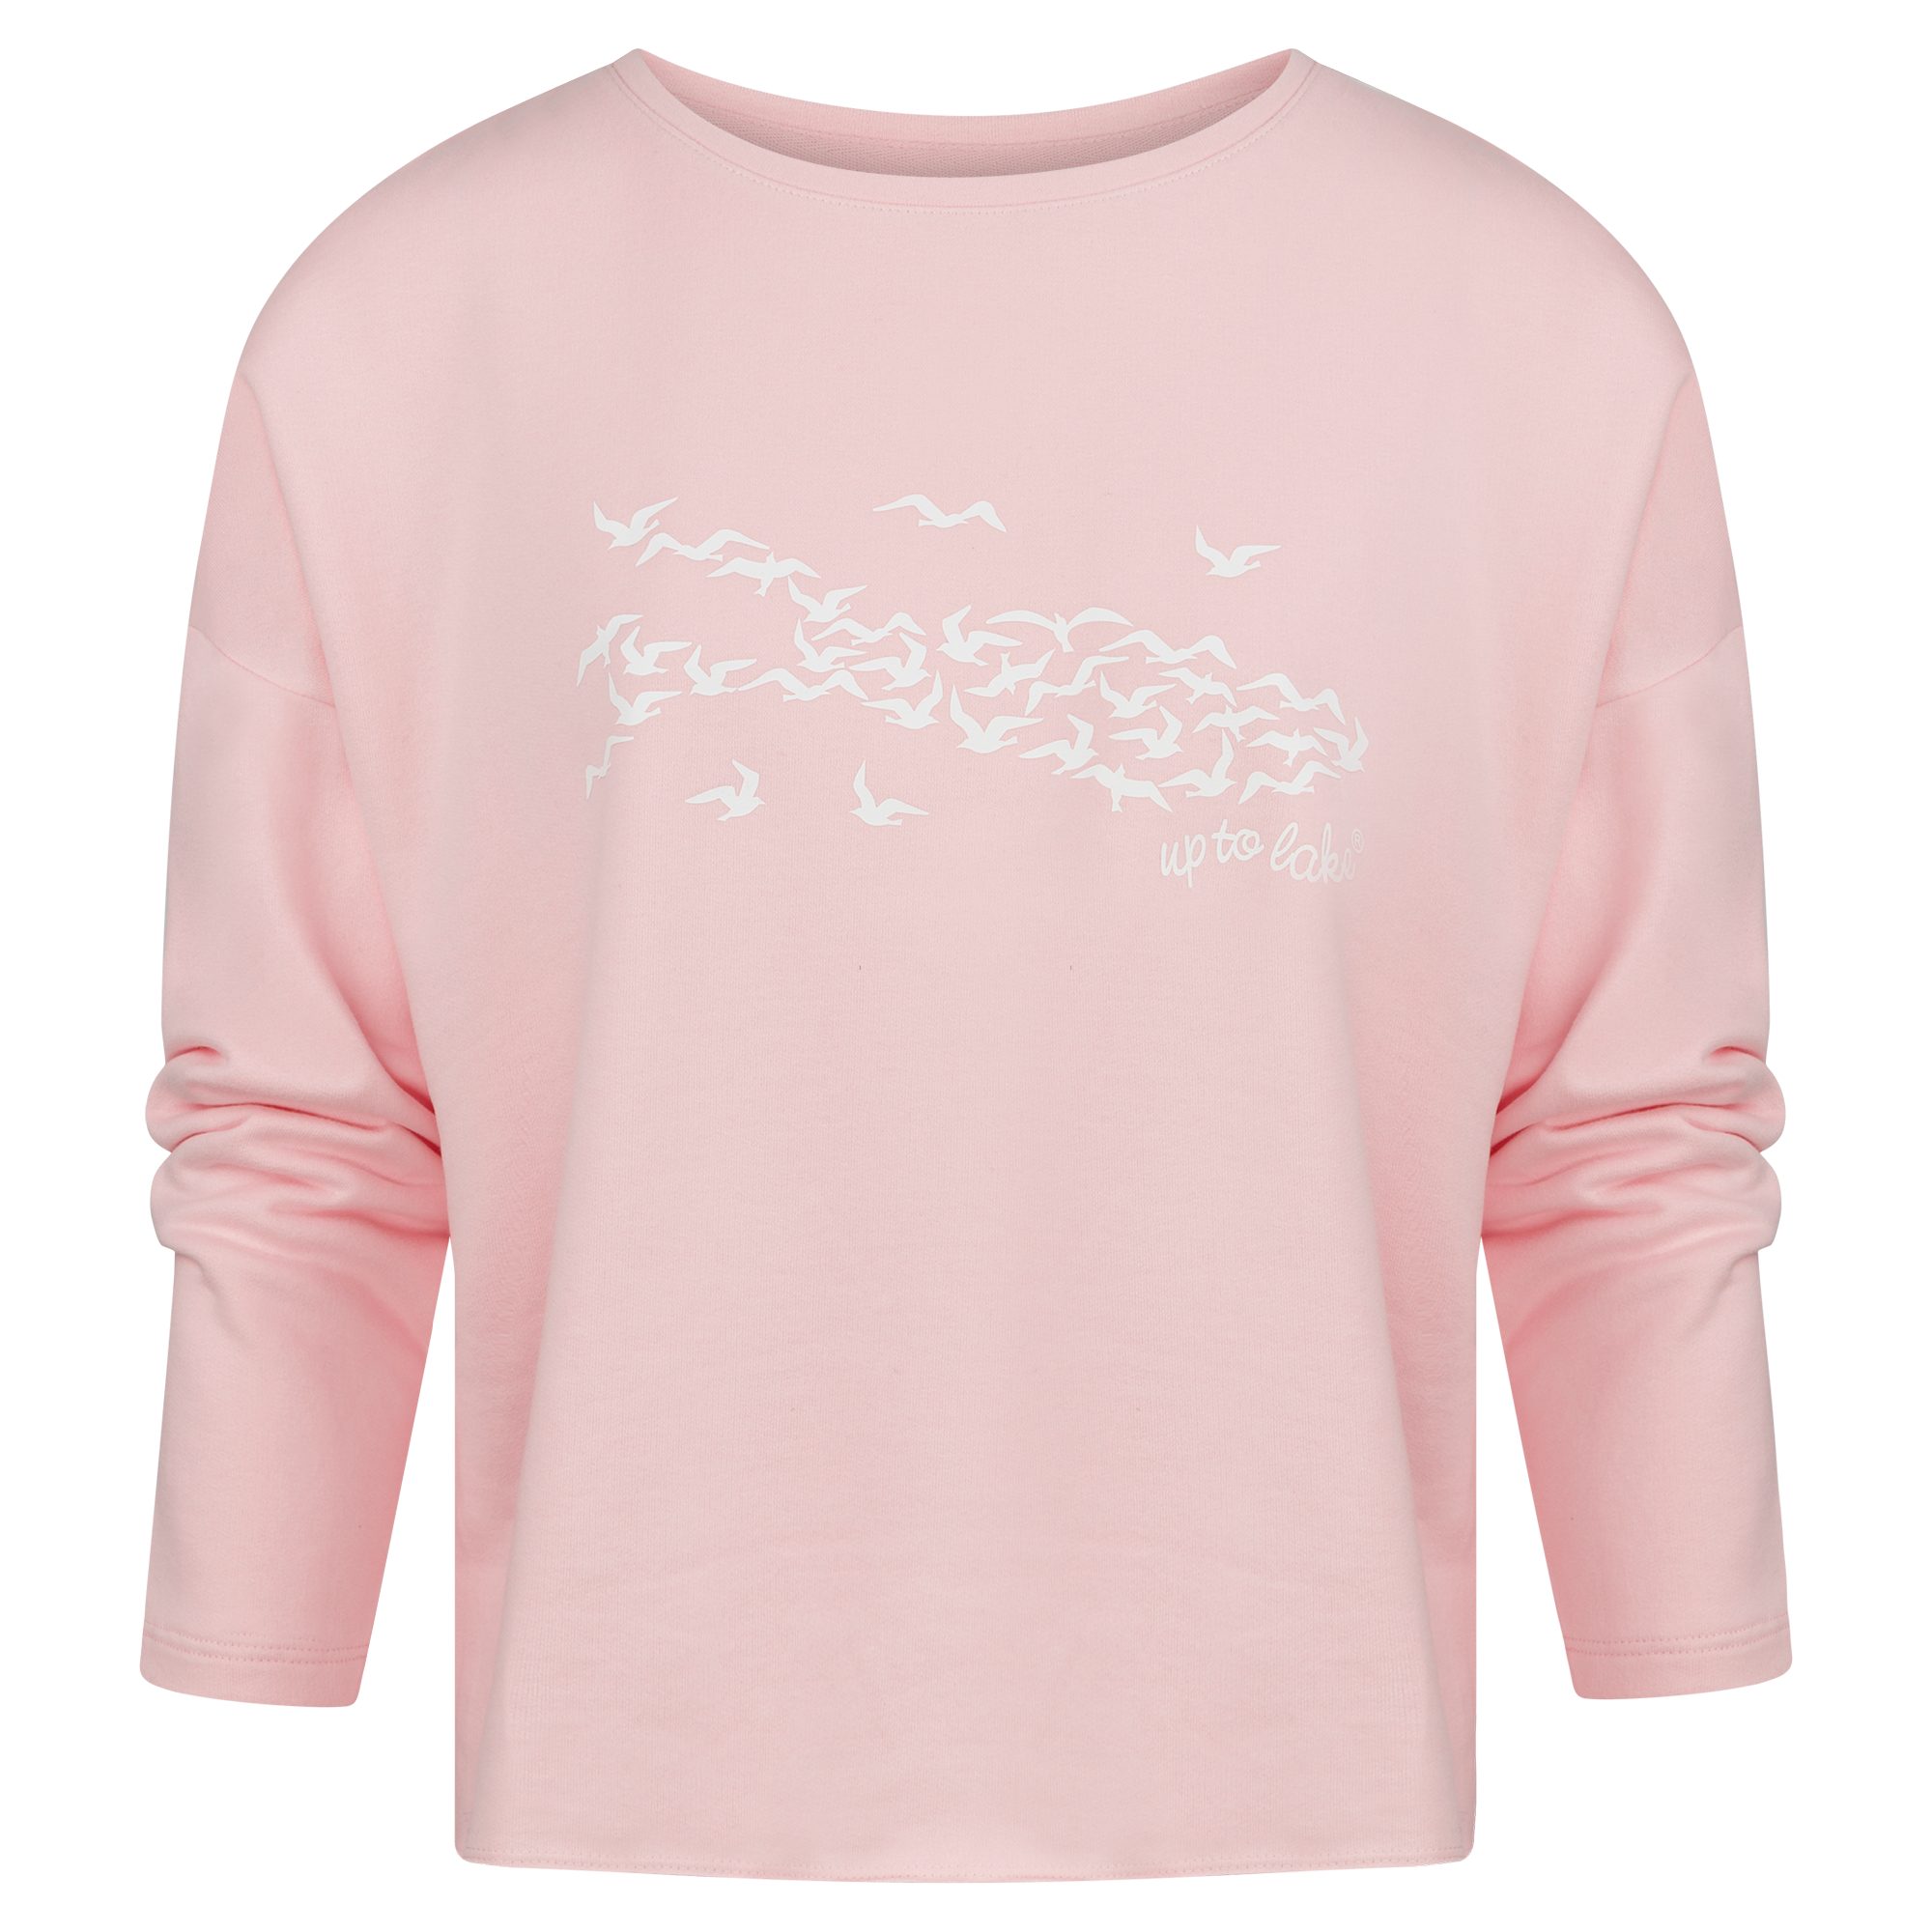 Sweatshirt aus Damen uptolake mit Rosa/Weiß weichem design "Mövensee-Bodensee" für Baumwollstoff Design